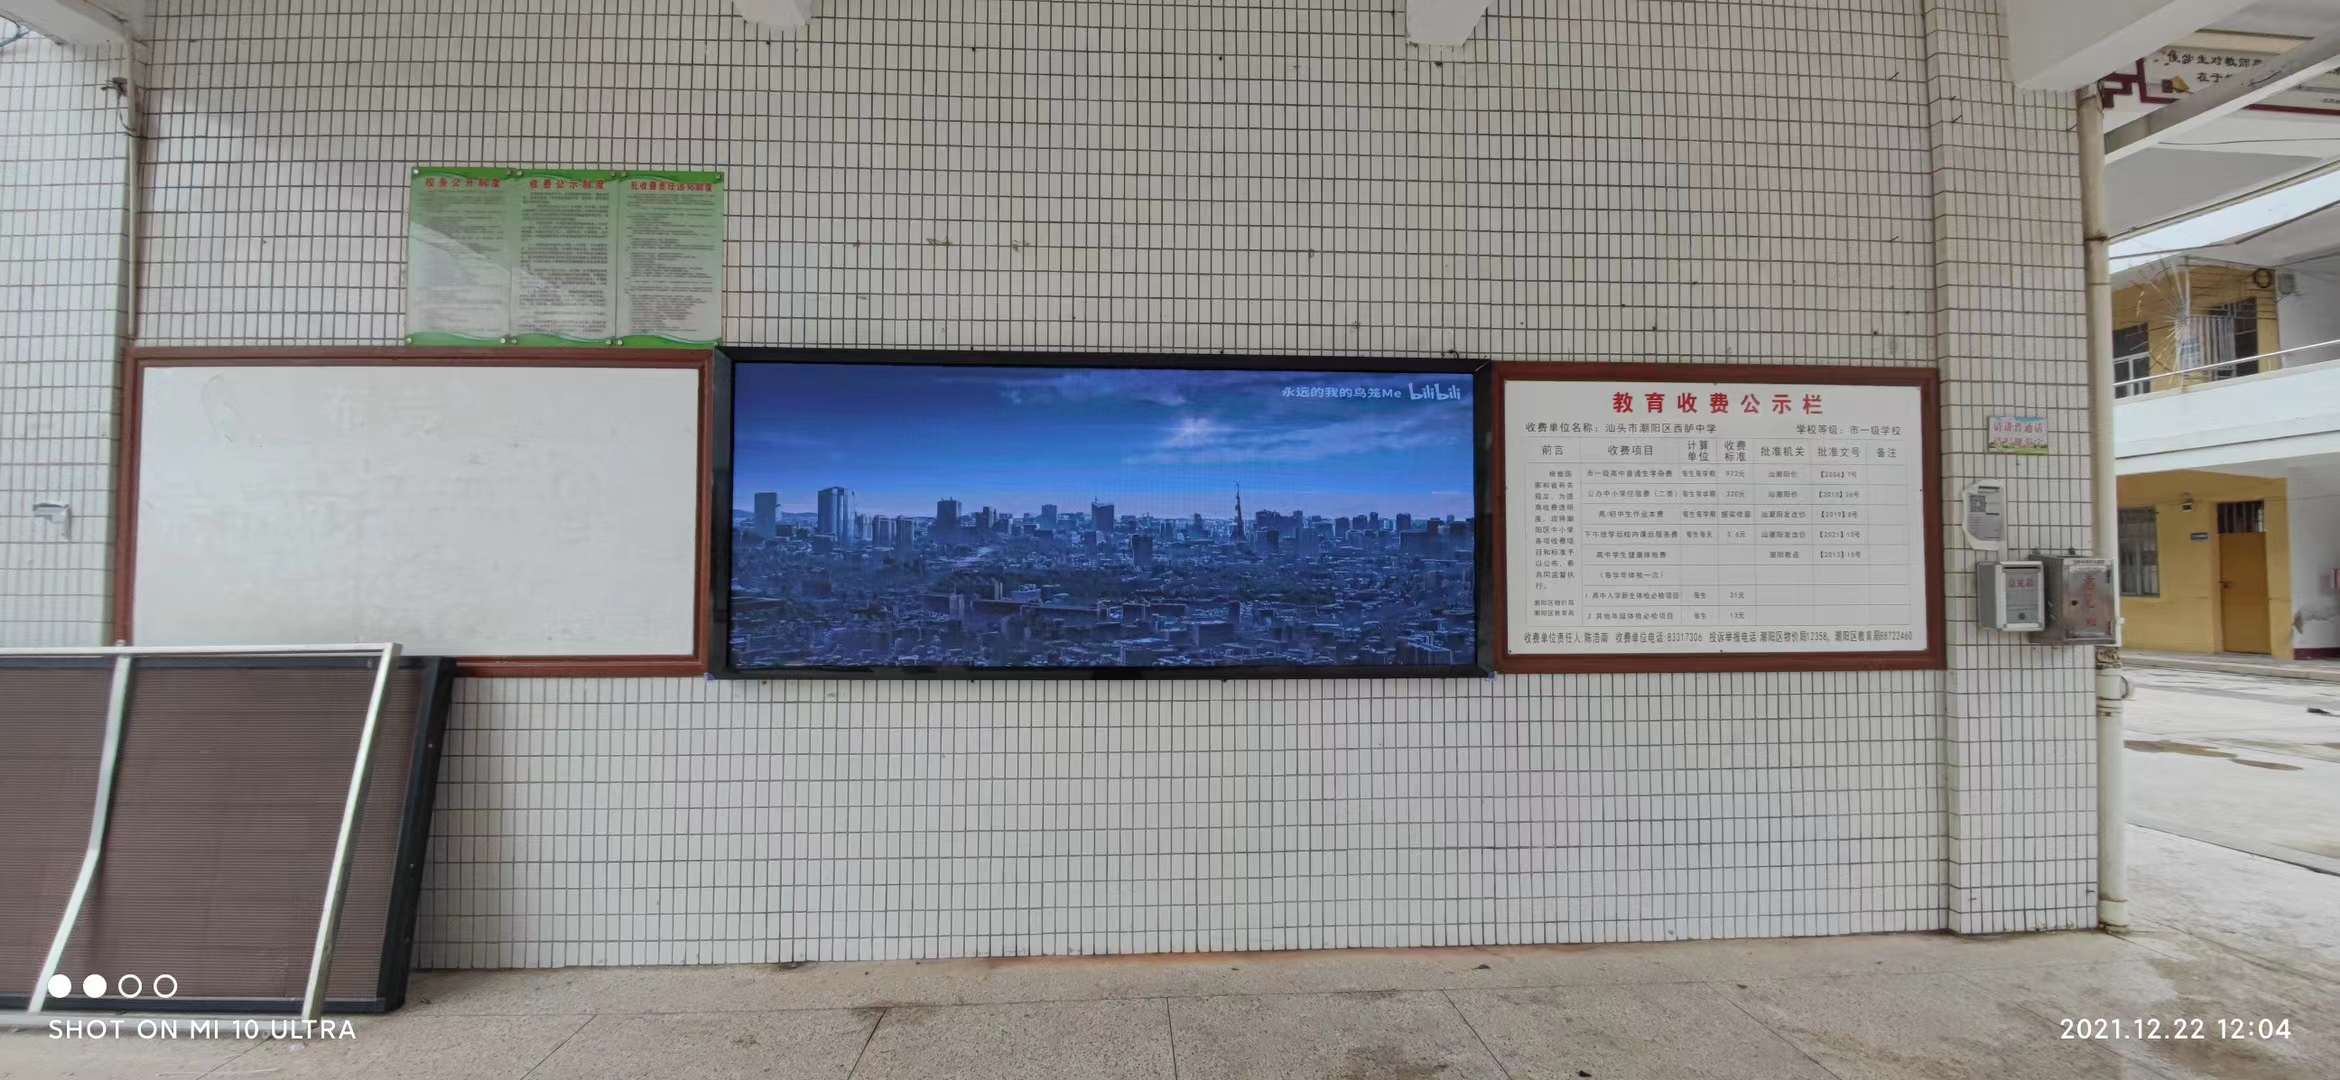 湛江商场多媒体广告机LED显示屏厂家品种繁多